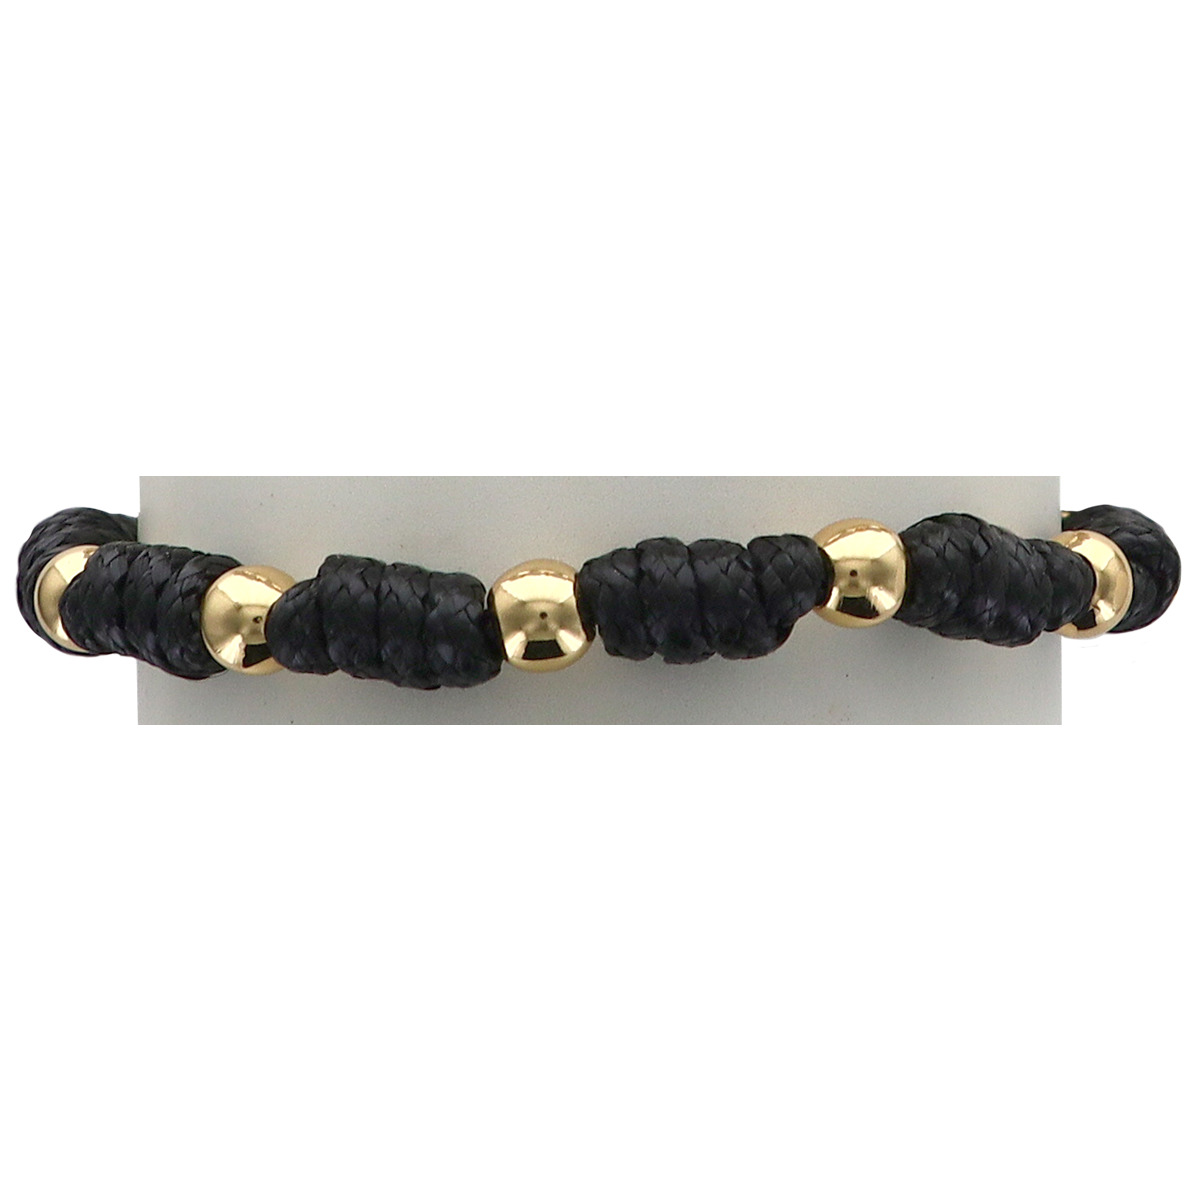 Bracelet dizainier sur corde réglable, de couleur noire, grains de couleurs dorés Ø 5 mm et croix blanche.